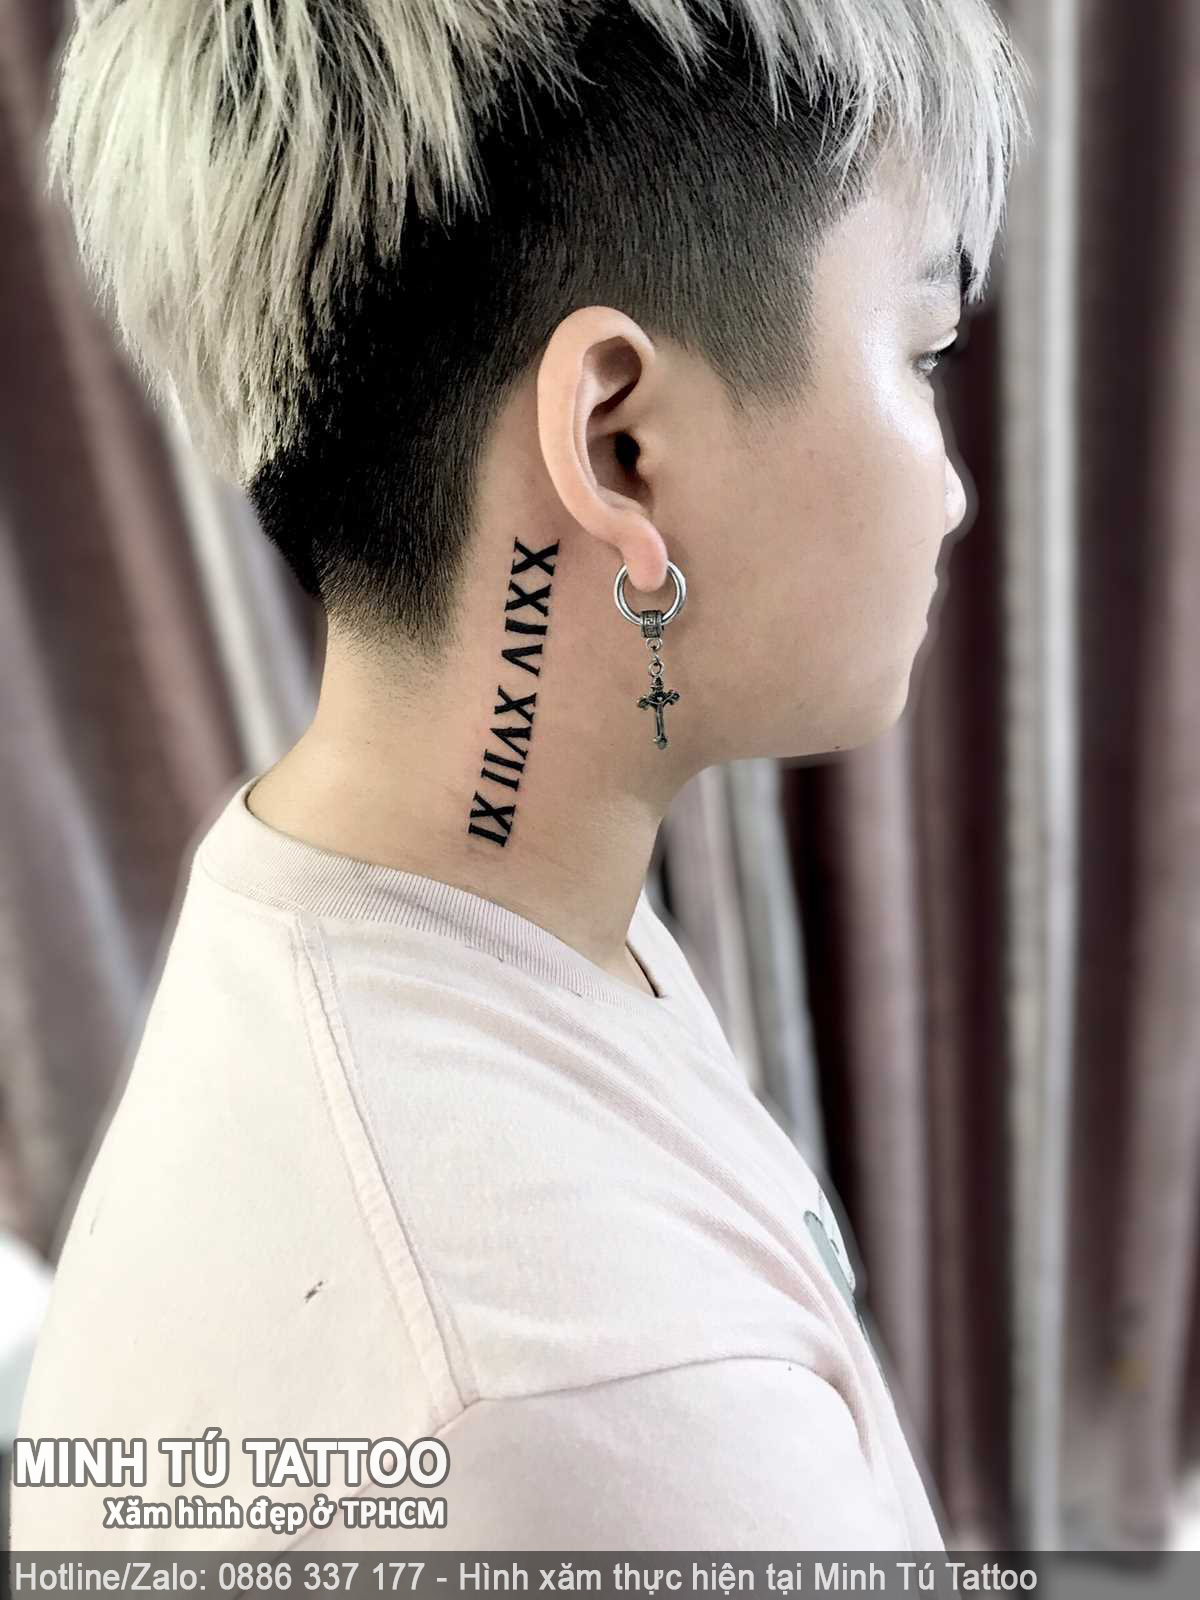 Tác phẩm hình xăm do Minh Tú Tattoo thực hiện 96